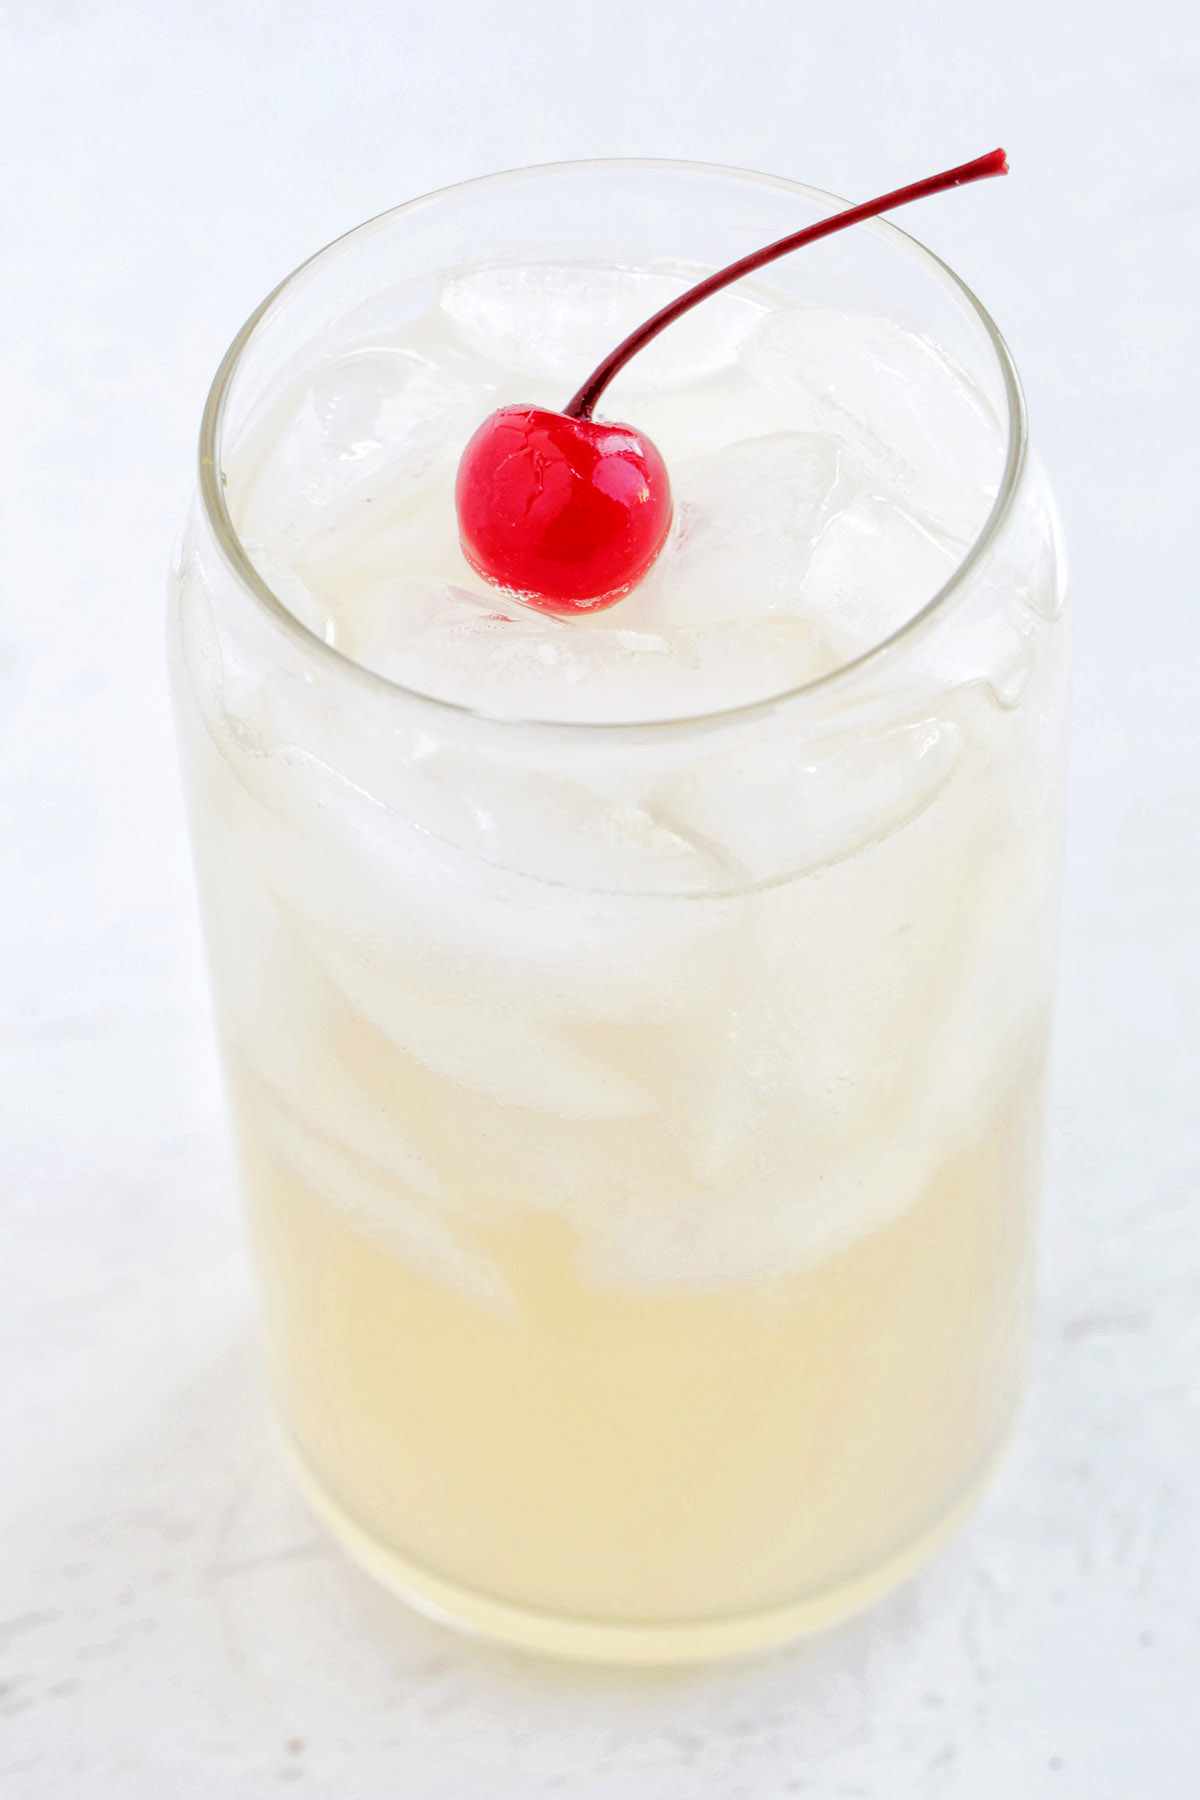 whiskey lemonade with cherry garnish.